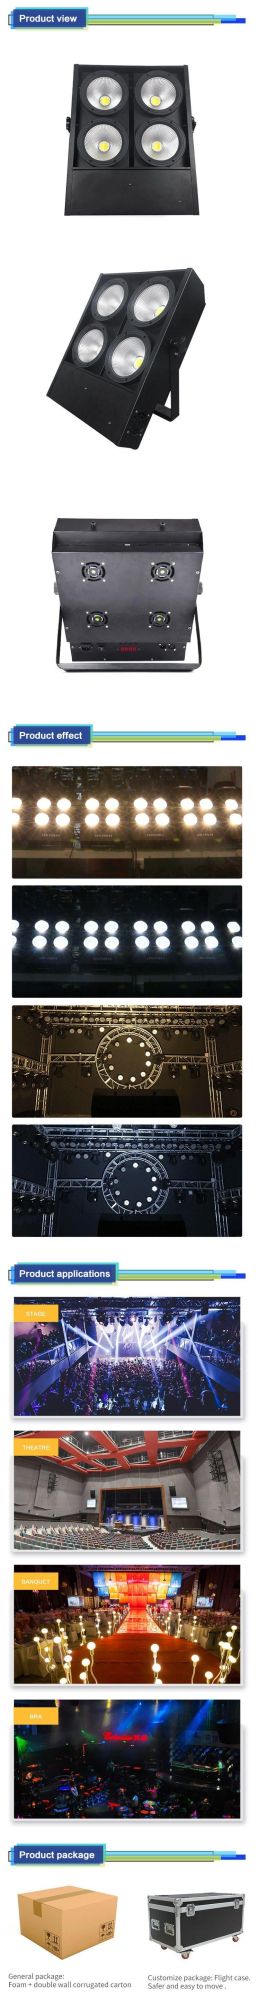 High Intensity Strobe Light 4PCS Viewer LED PAR Lights for Stage